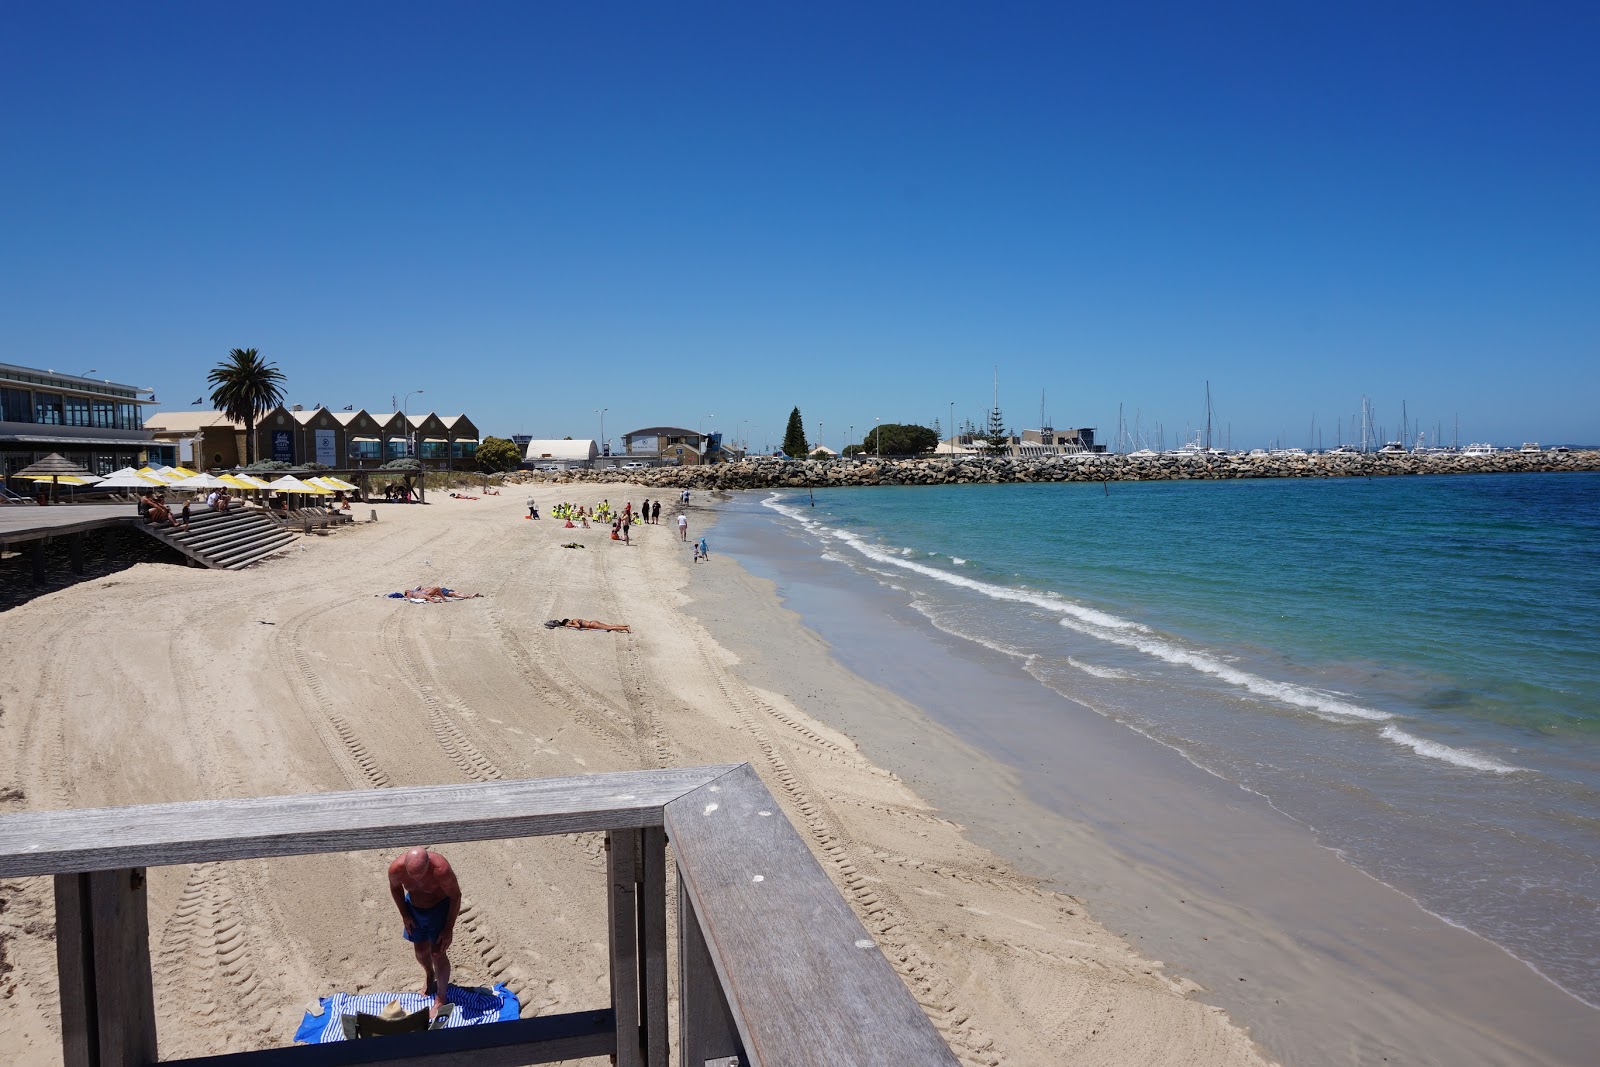 Bathers Beach'in fotoğrafı geniş plaj ile birlikte